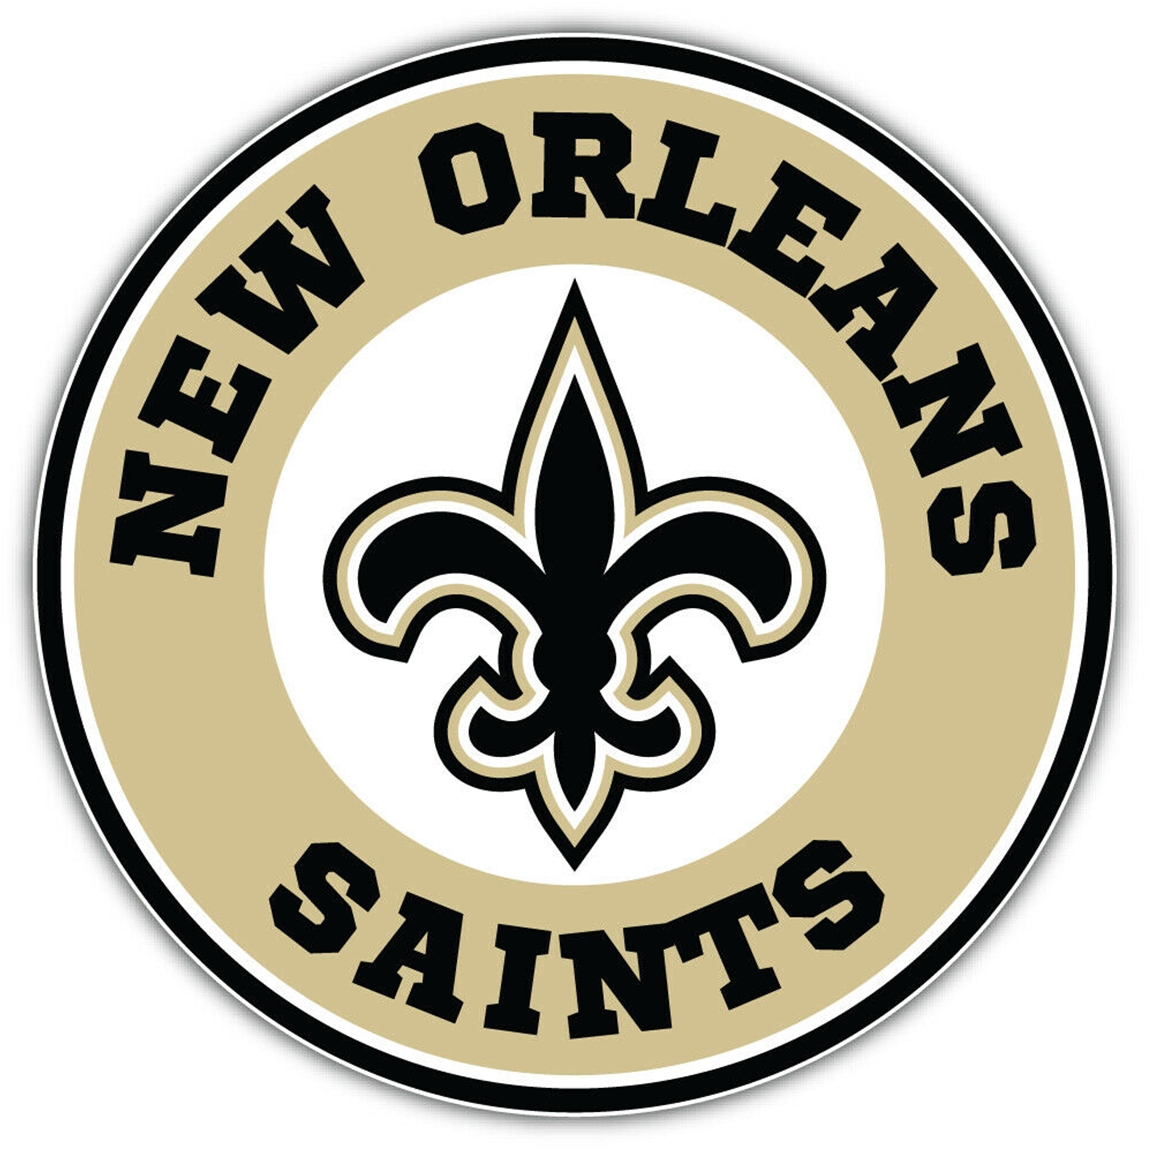 New Orleans Saints Pub Tap Handle